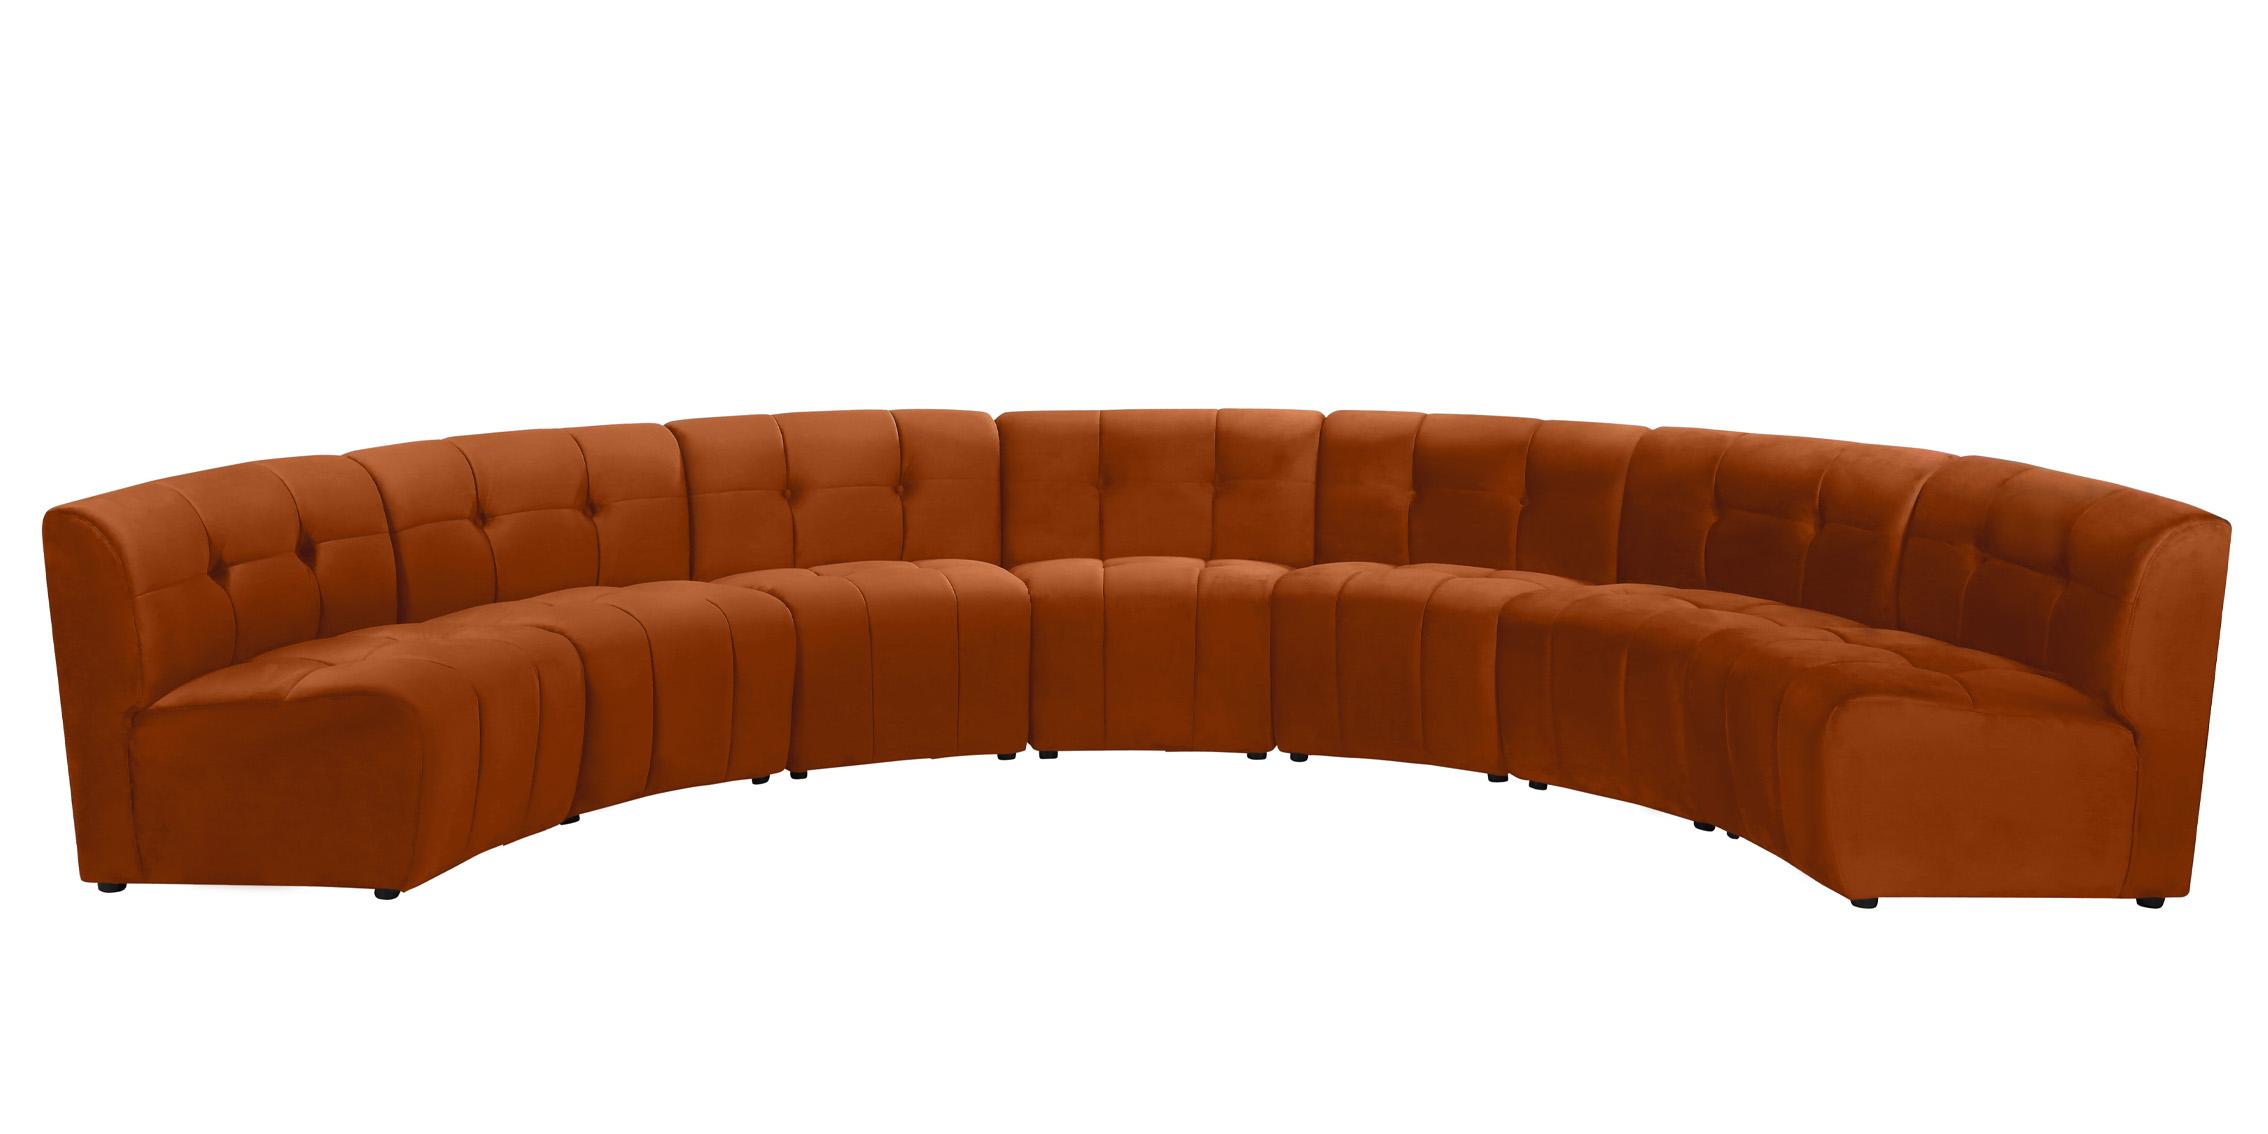 Meridian Furniture LIMITLESS 645Cognac-7PC Modular Sectional Sofa